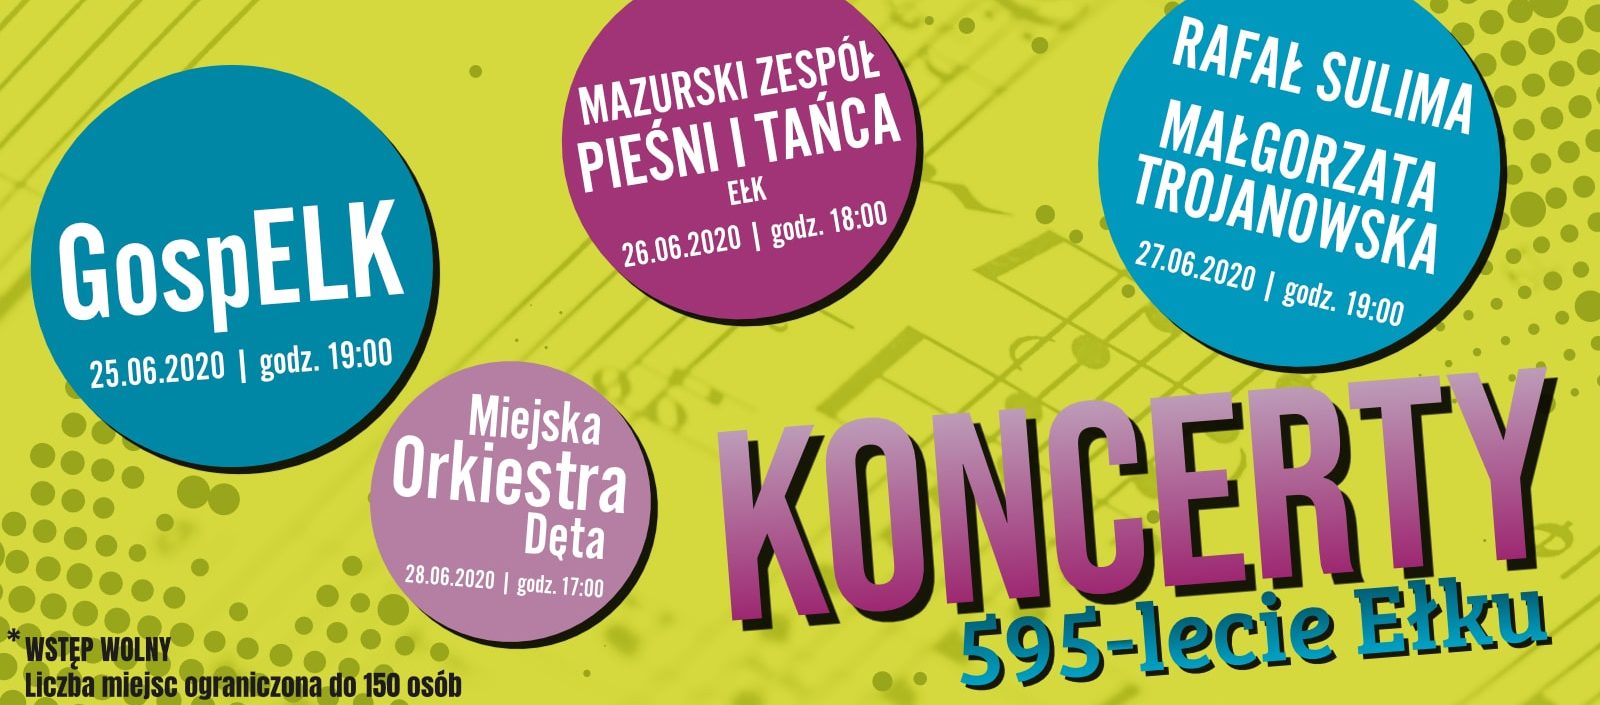 Koncert Mazurskiego Zespołu Pieśni i Tańca „Ełk” Lato 2020 – koncerty z okazji 595-lecia Ełku!